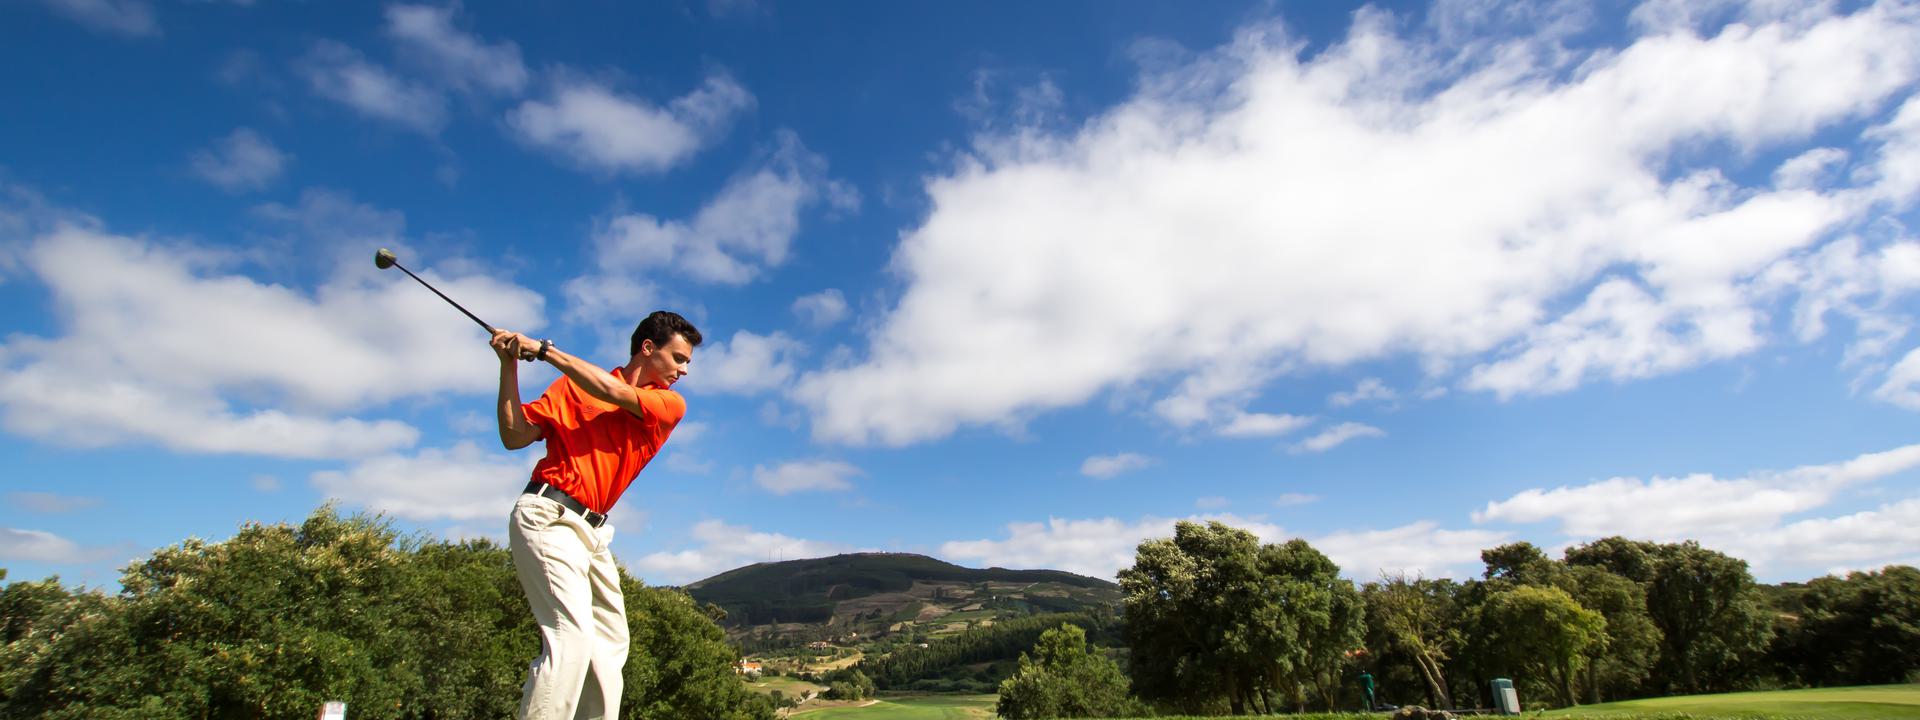 Les 6 meilleurs terrains de golf dans le Centre du Portugal : une liste de premier plan de destinations de golf